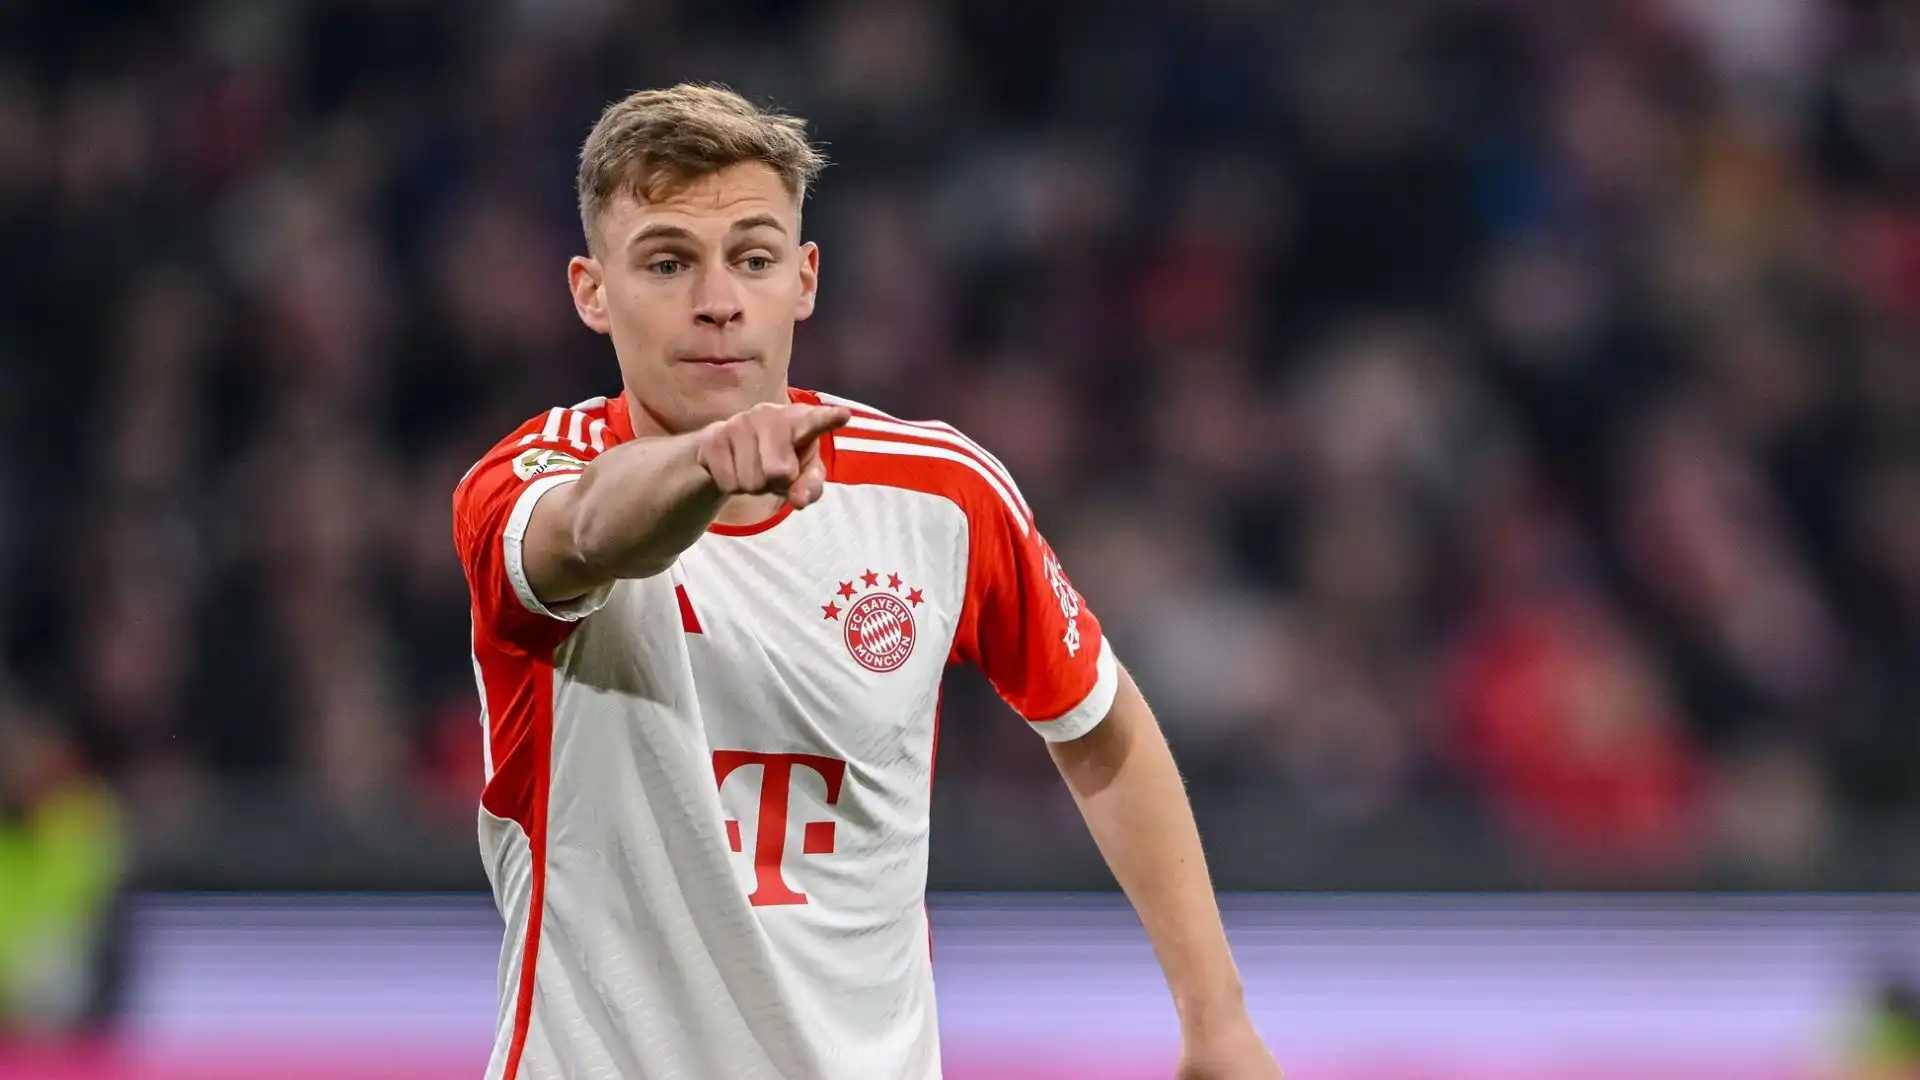 La stella del Bayern Monaco ha un contratto in scadenza nel 2025 e deve decidere il suo futuro